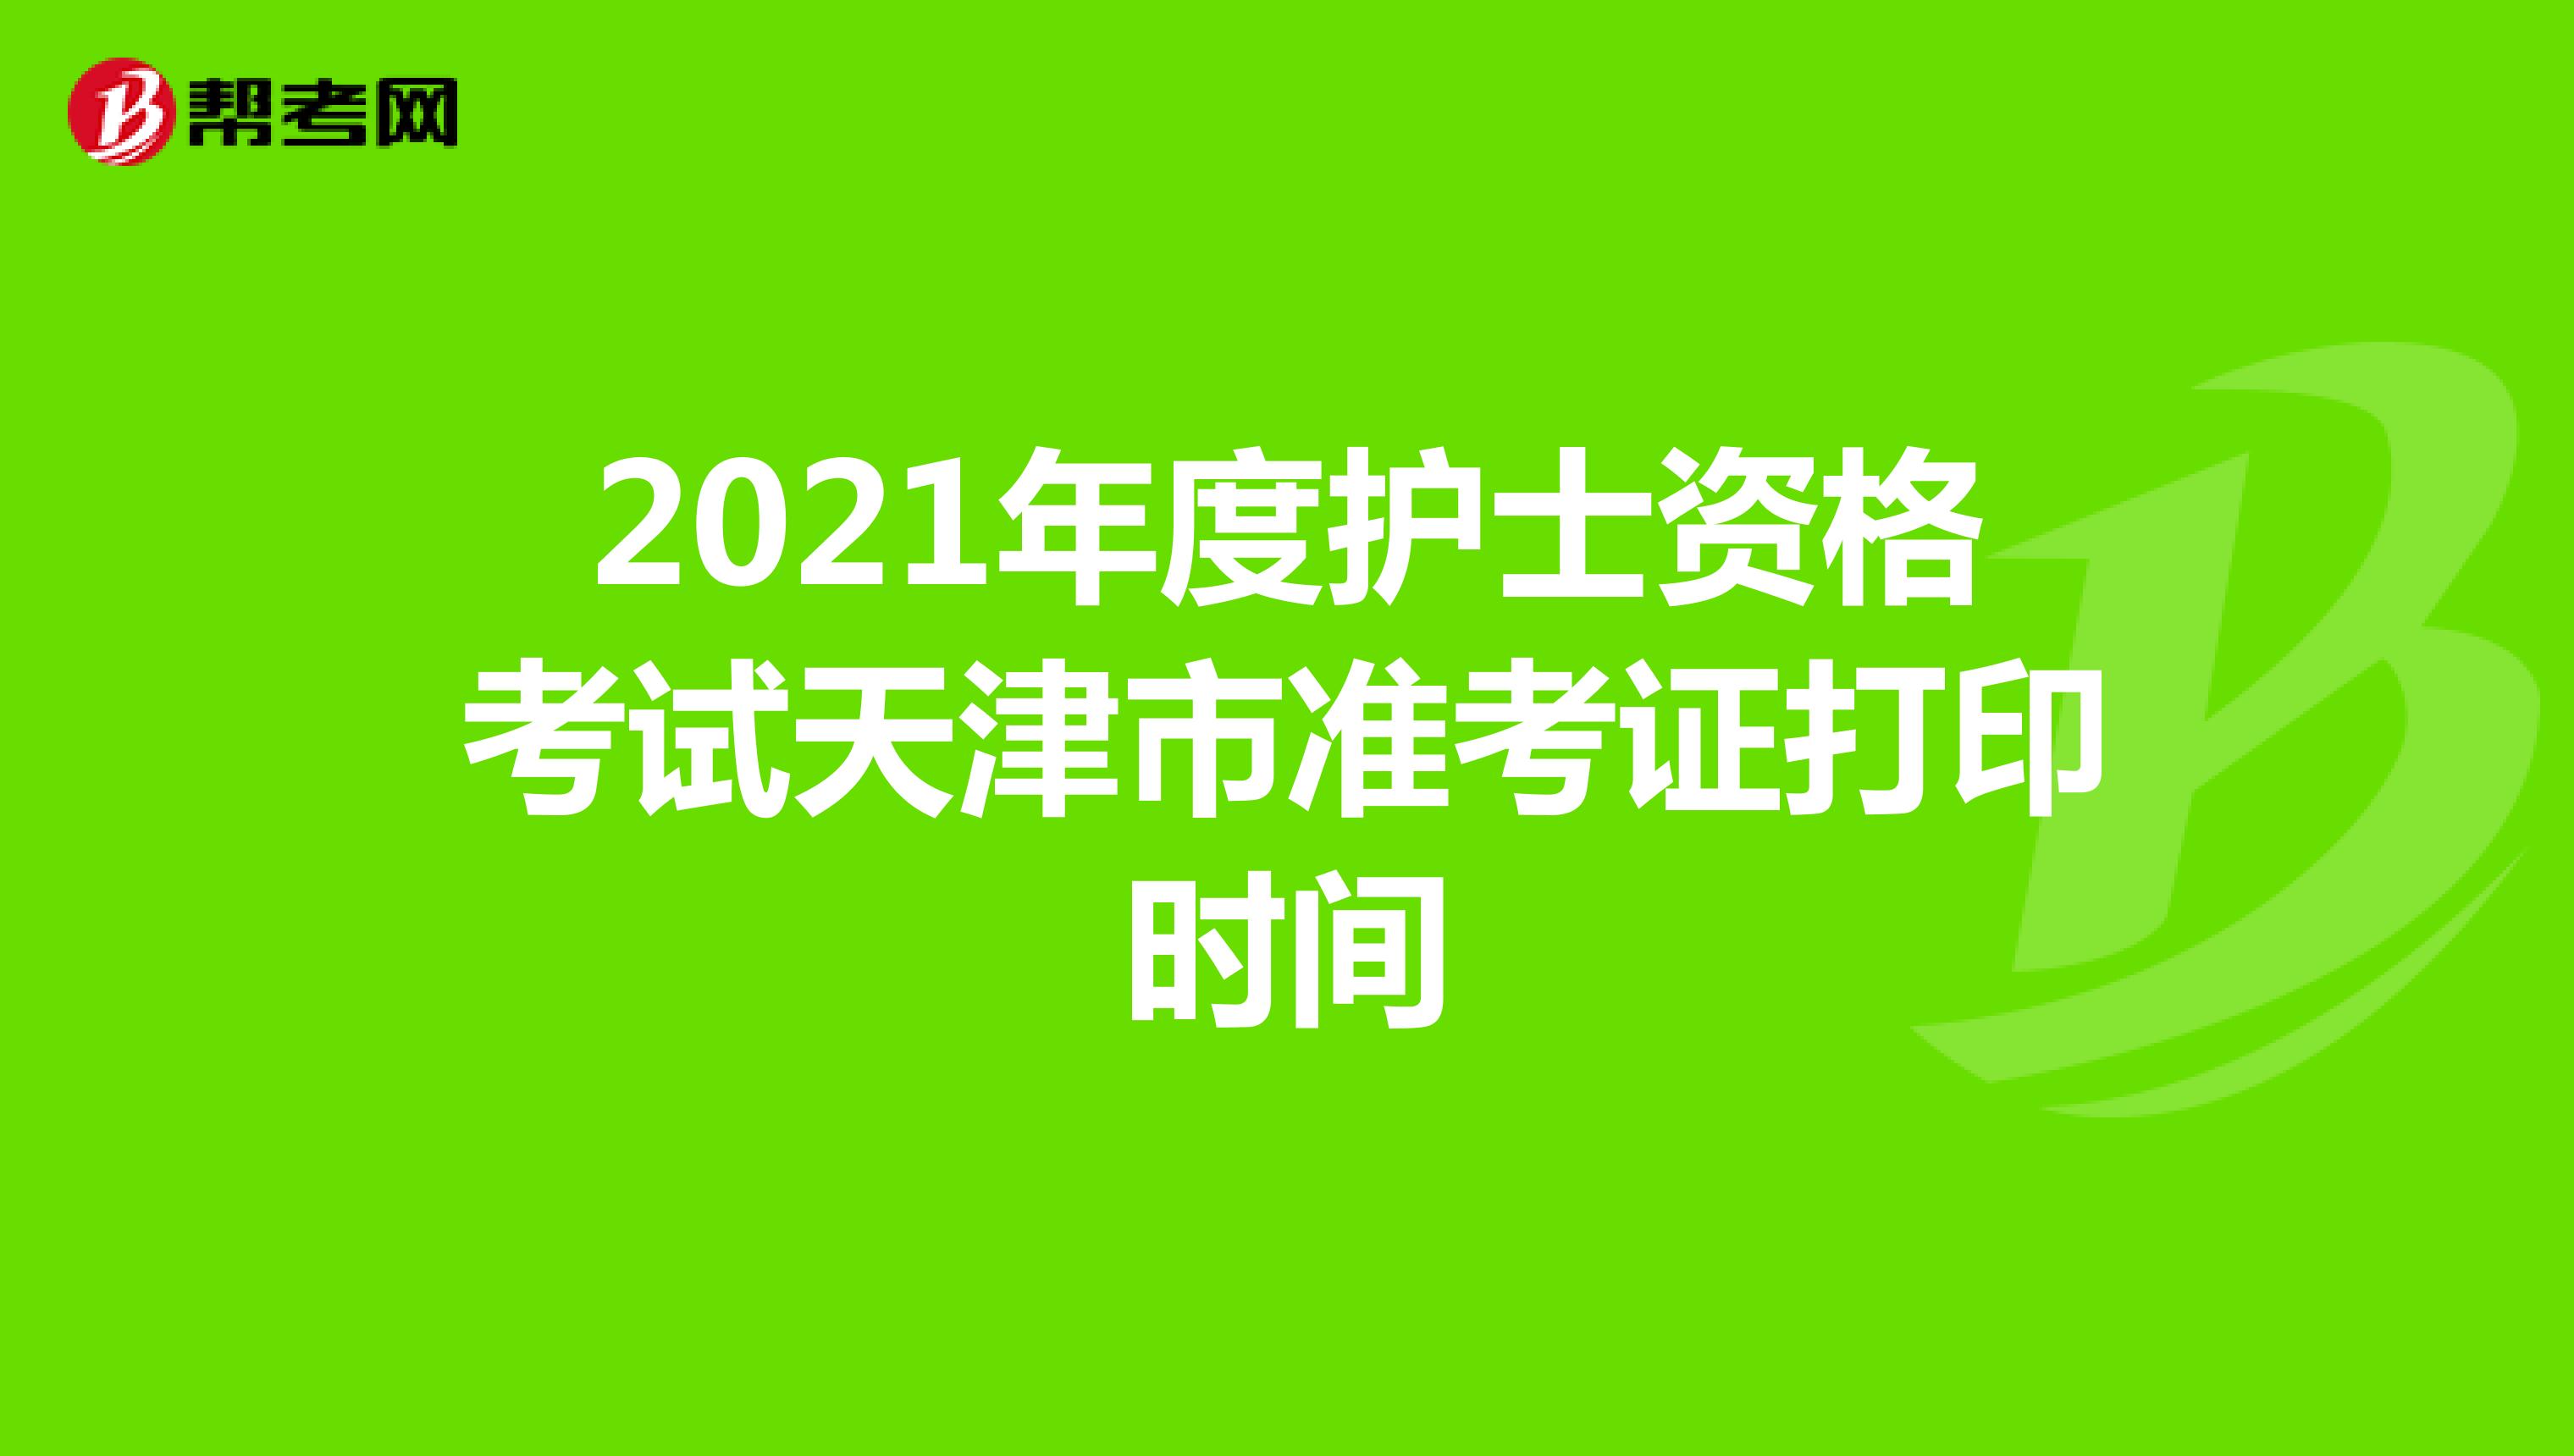 2021年度护士资格考试天津市准考证打印时间